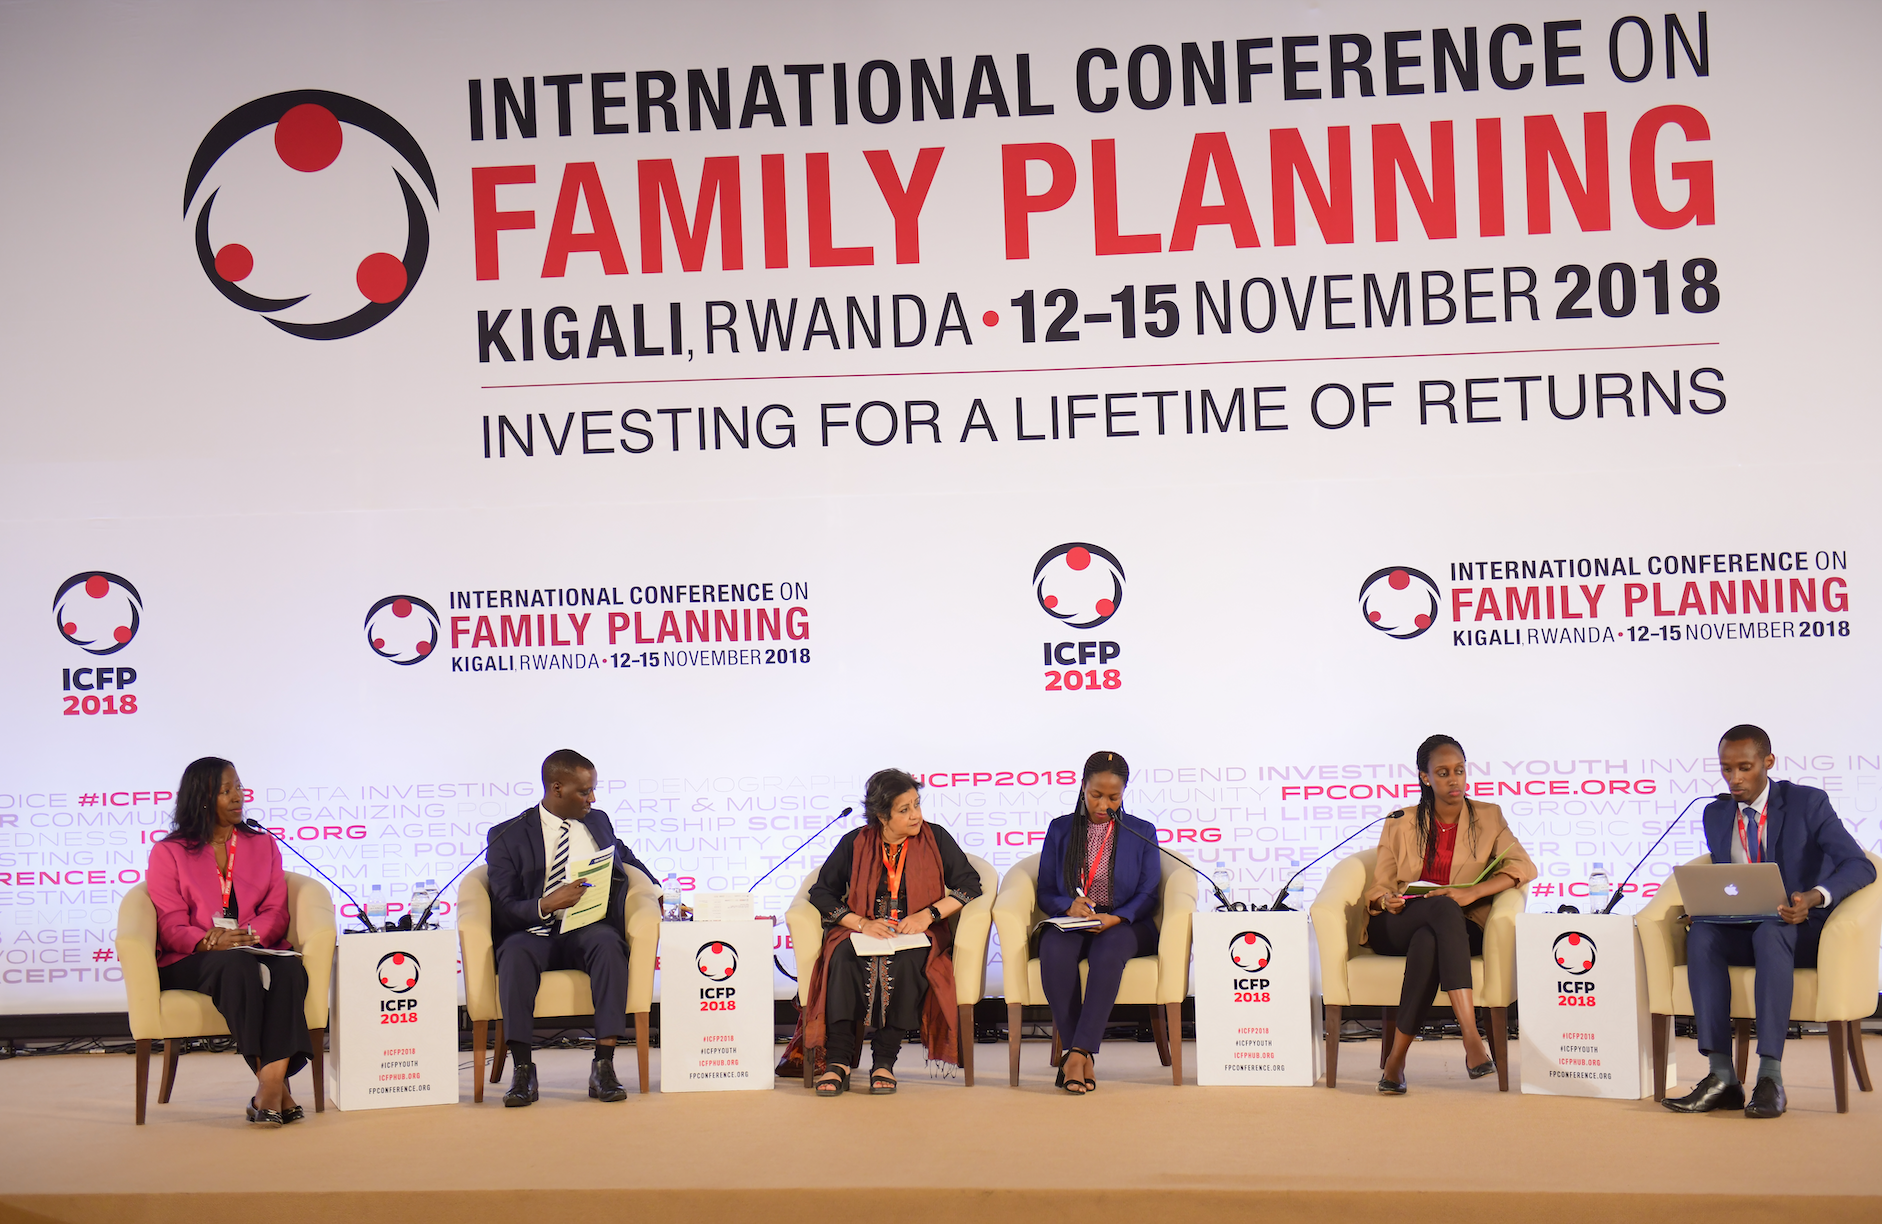 Dividende démographique - Points forts de la 5e conférence internationale sur la planification familiale